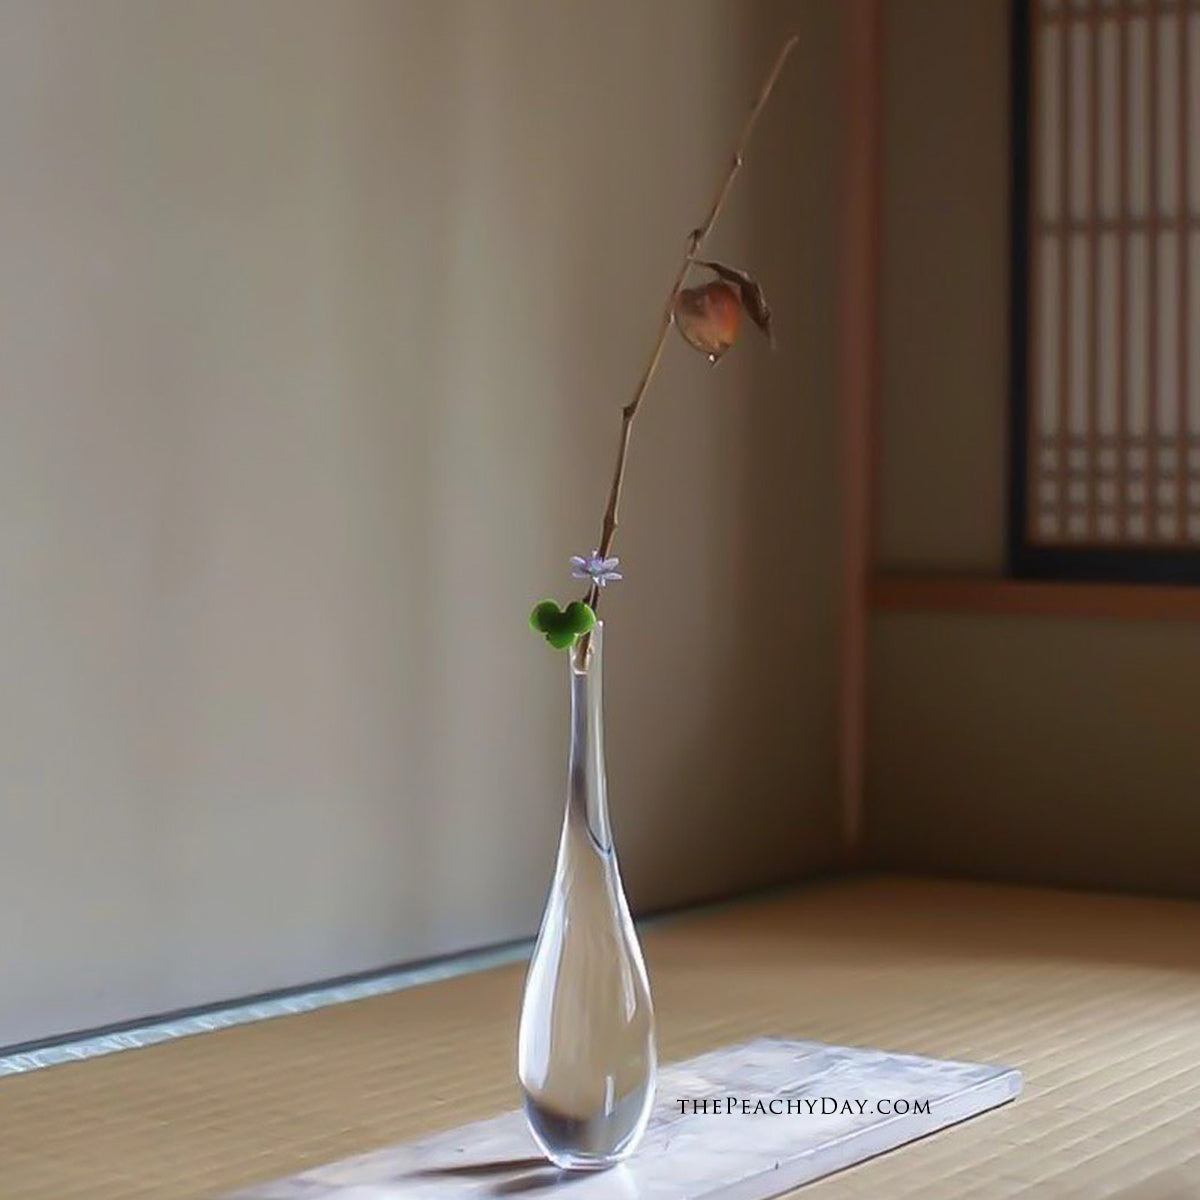 Japanese Chinese Zen Vase 梅瓶玉净瓶 Transparent decorative Glass bottle tea-culture tea ceremony Countertop Vase Home Decoration Flower Arrangement Hydroponic Small Vase Home